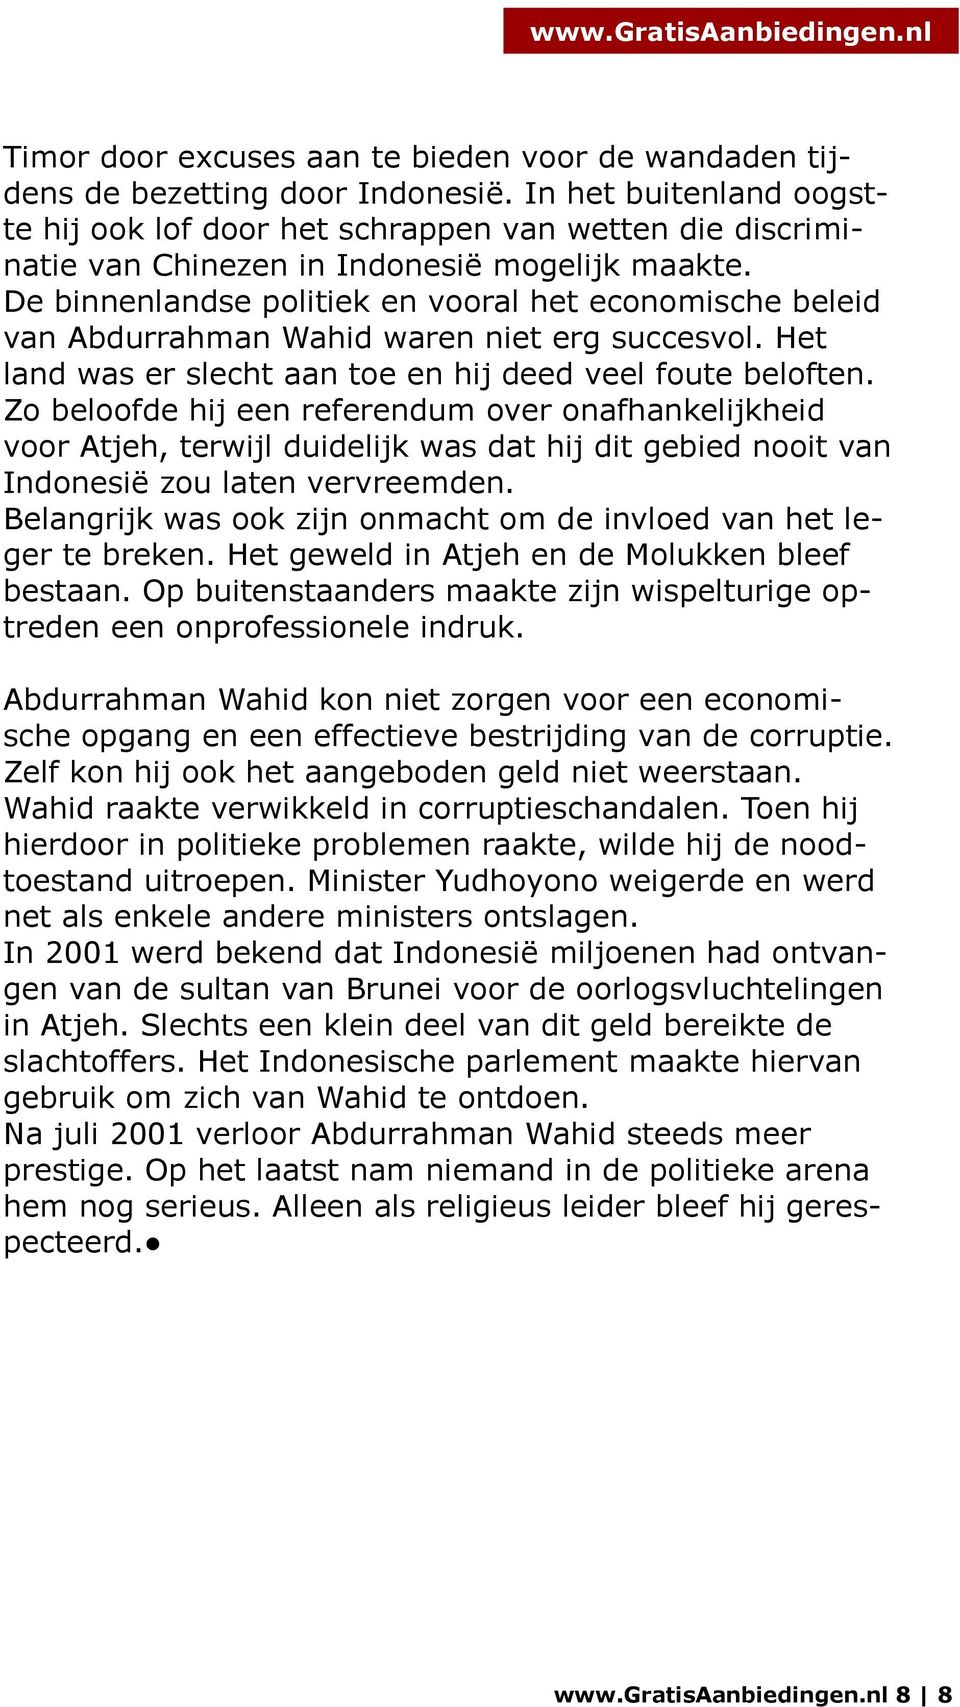 De binnenlandse politiek en vooral het economische beleid van Abdurrahman Wahid waren niet erg succesvol. Het land was er slecht aan toe en hij deed veel foute beloften.